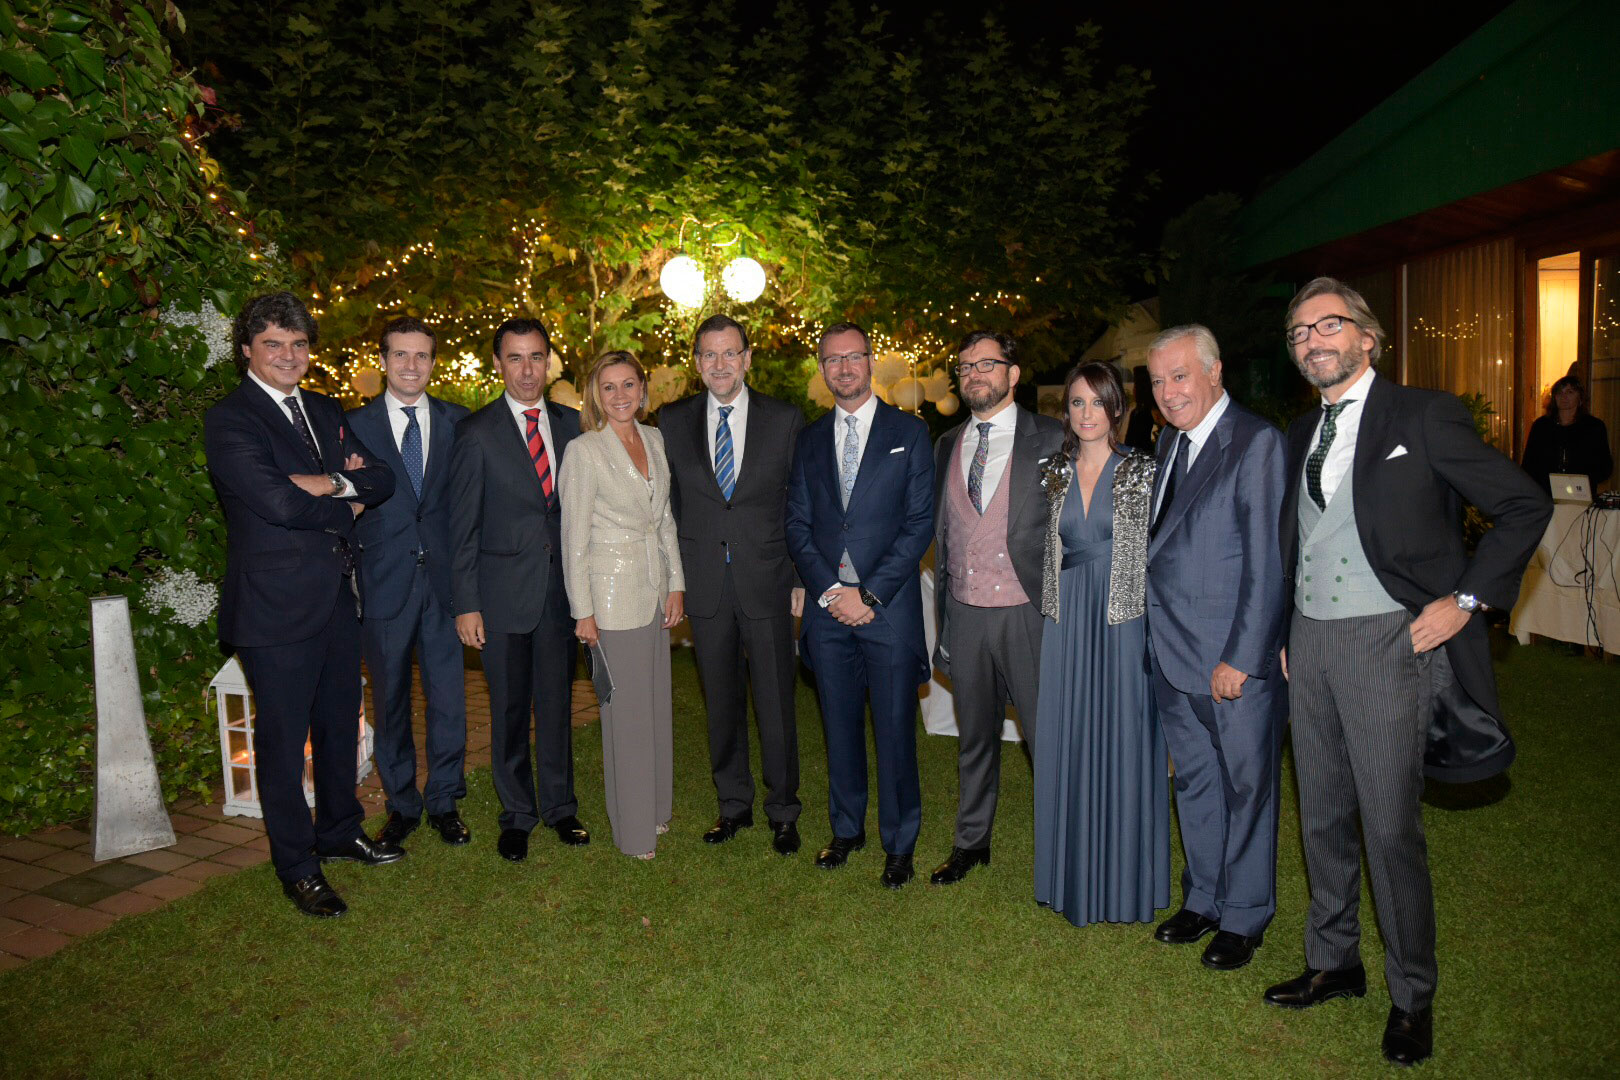 Rajoy, Santamaría, Cospedal y Alonso brindan con Maroto en la celebración de su boda en Vitoria